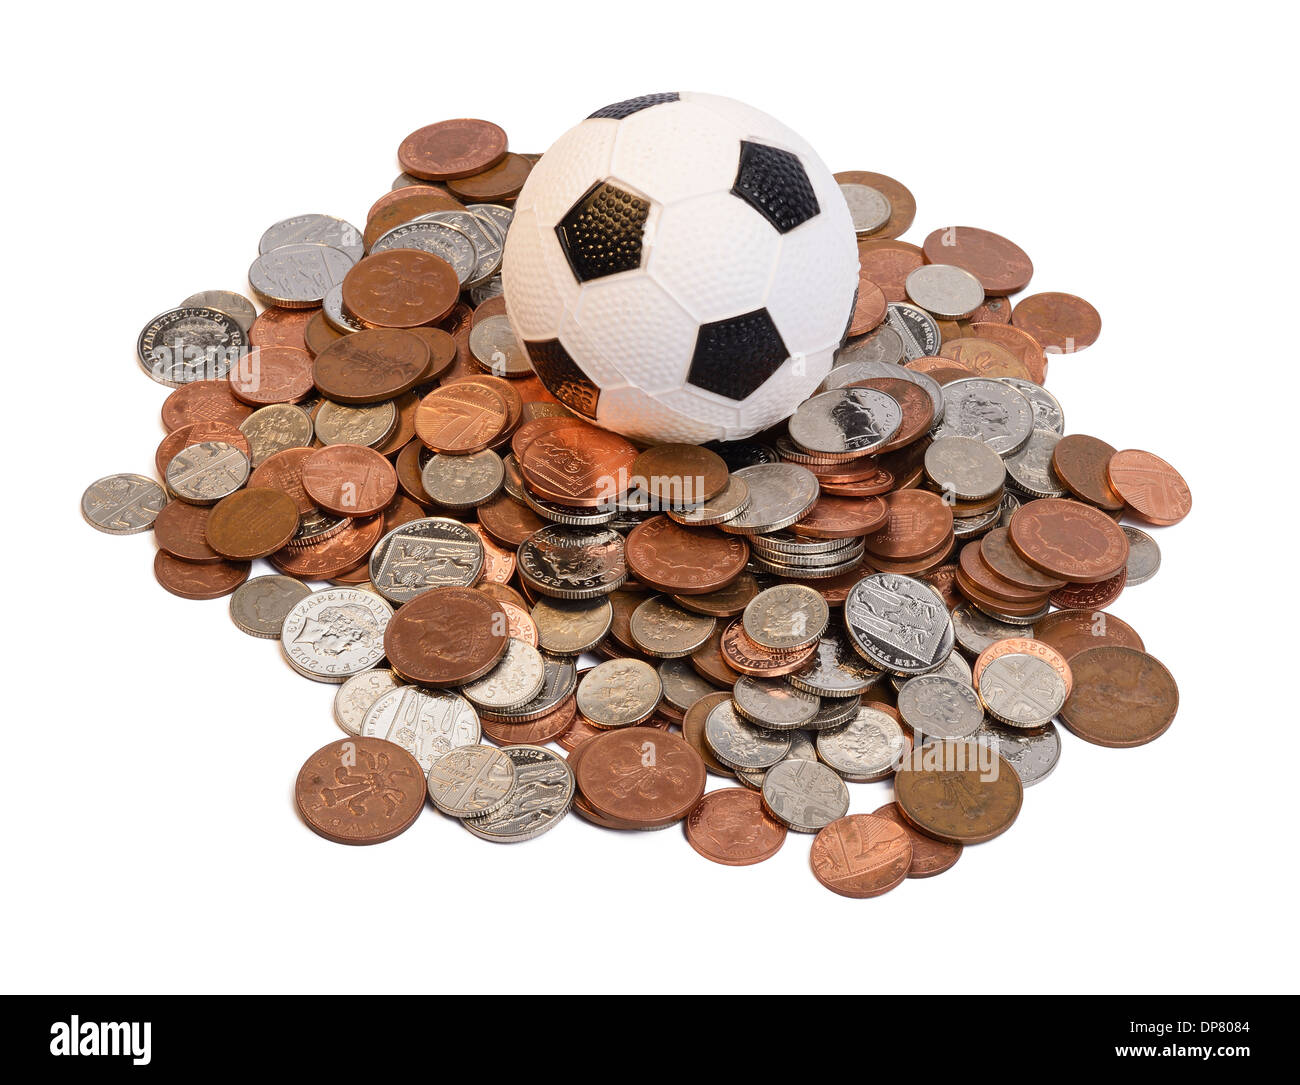 Fußball in der Mitte ein Stapel der Münzen Stockfoto